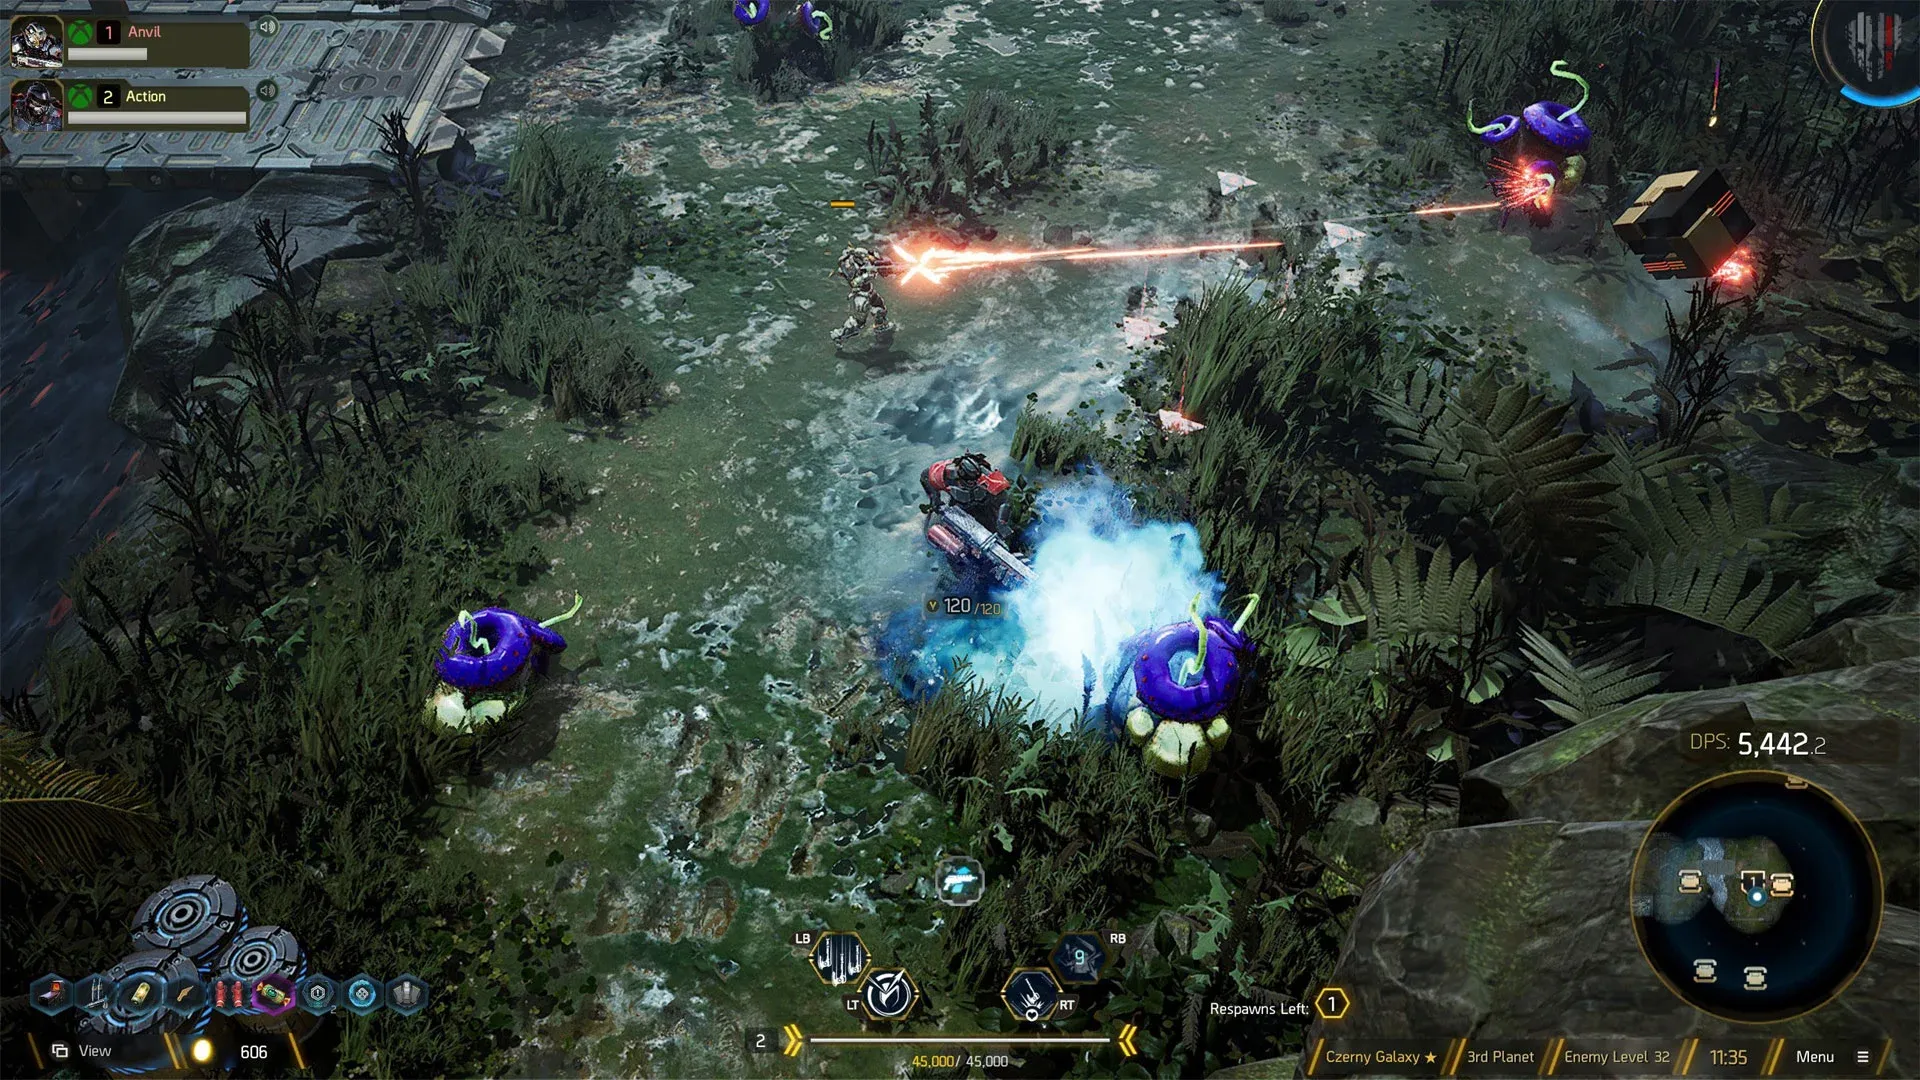 Imagem do jogo Anvil com dois personagens denominados "Breakers" atirando contra criaturas em uma floresta